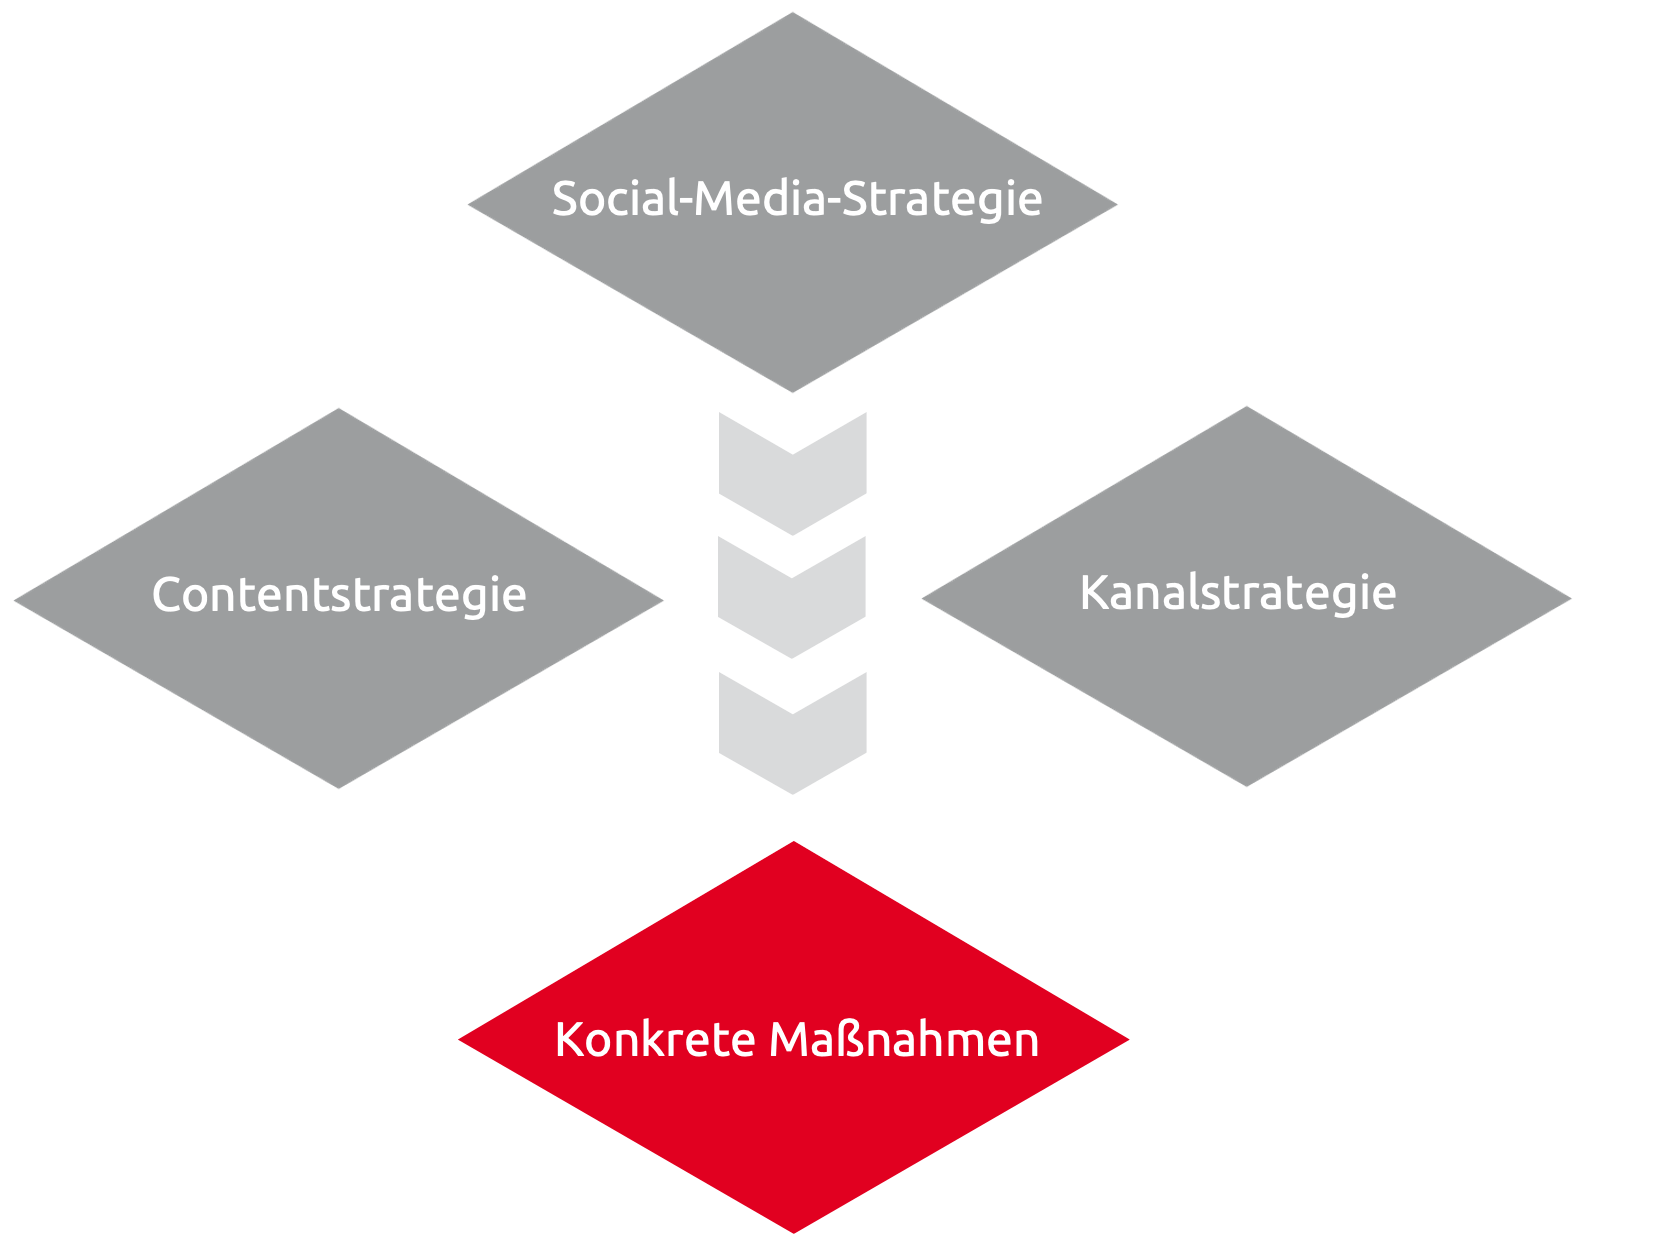 Schaubild: Auf die Social-Media-Strategie folgen Content- und Kanalstrategie. Am Ende stehen konkrete Maßnahmen.